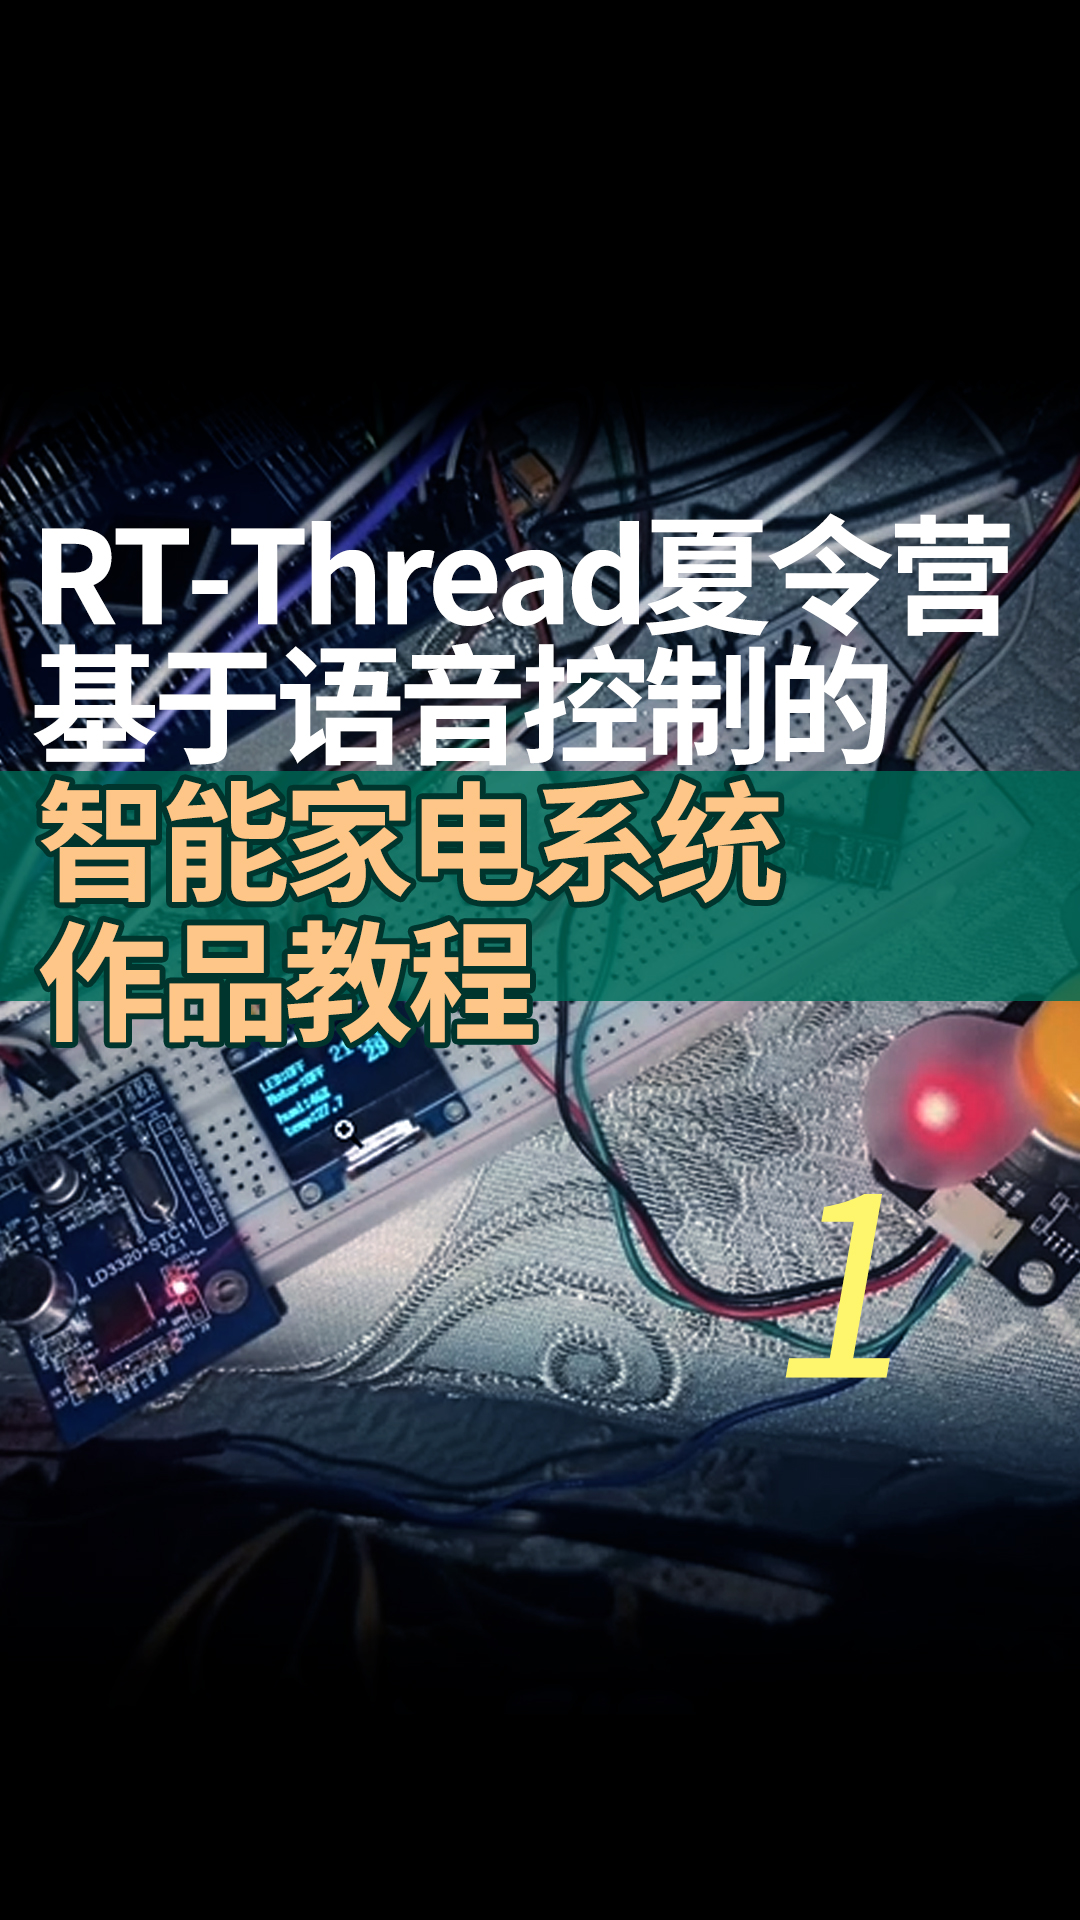 RT-Thread夏令营基于语音控制的智能家电系统作品教程 - 1-项目介绍